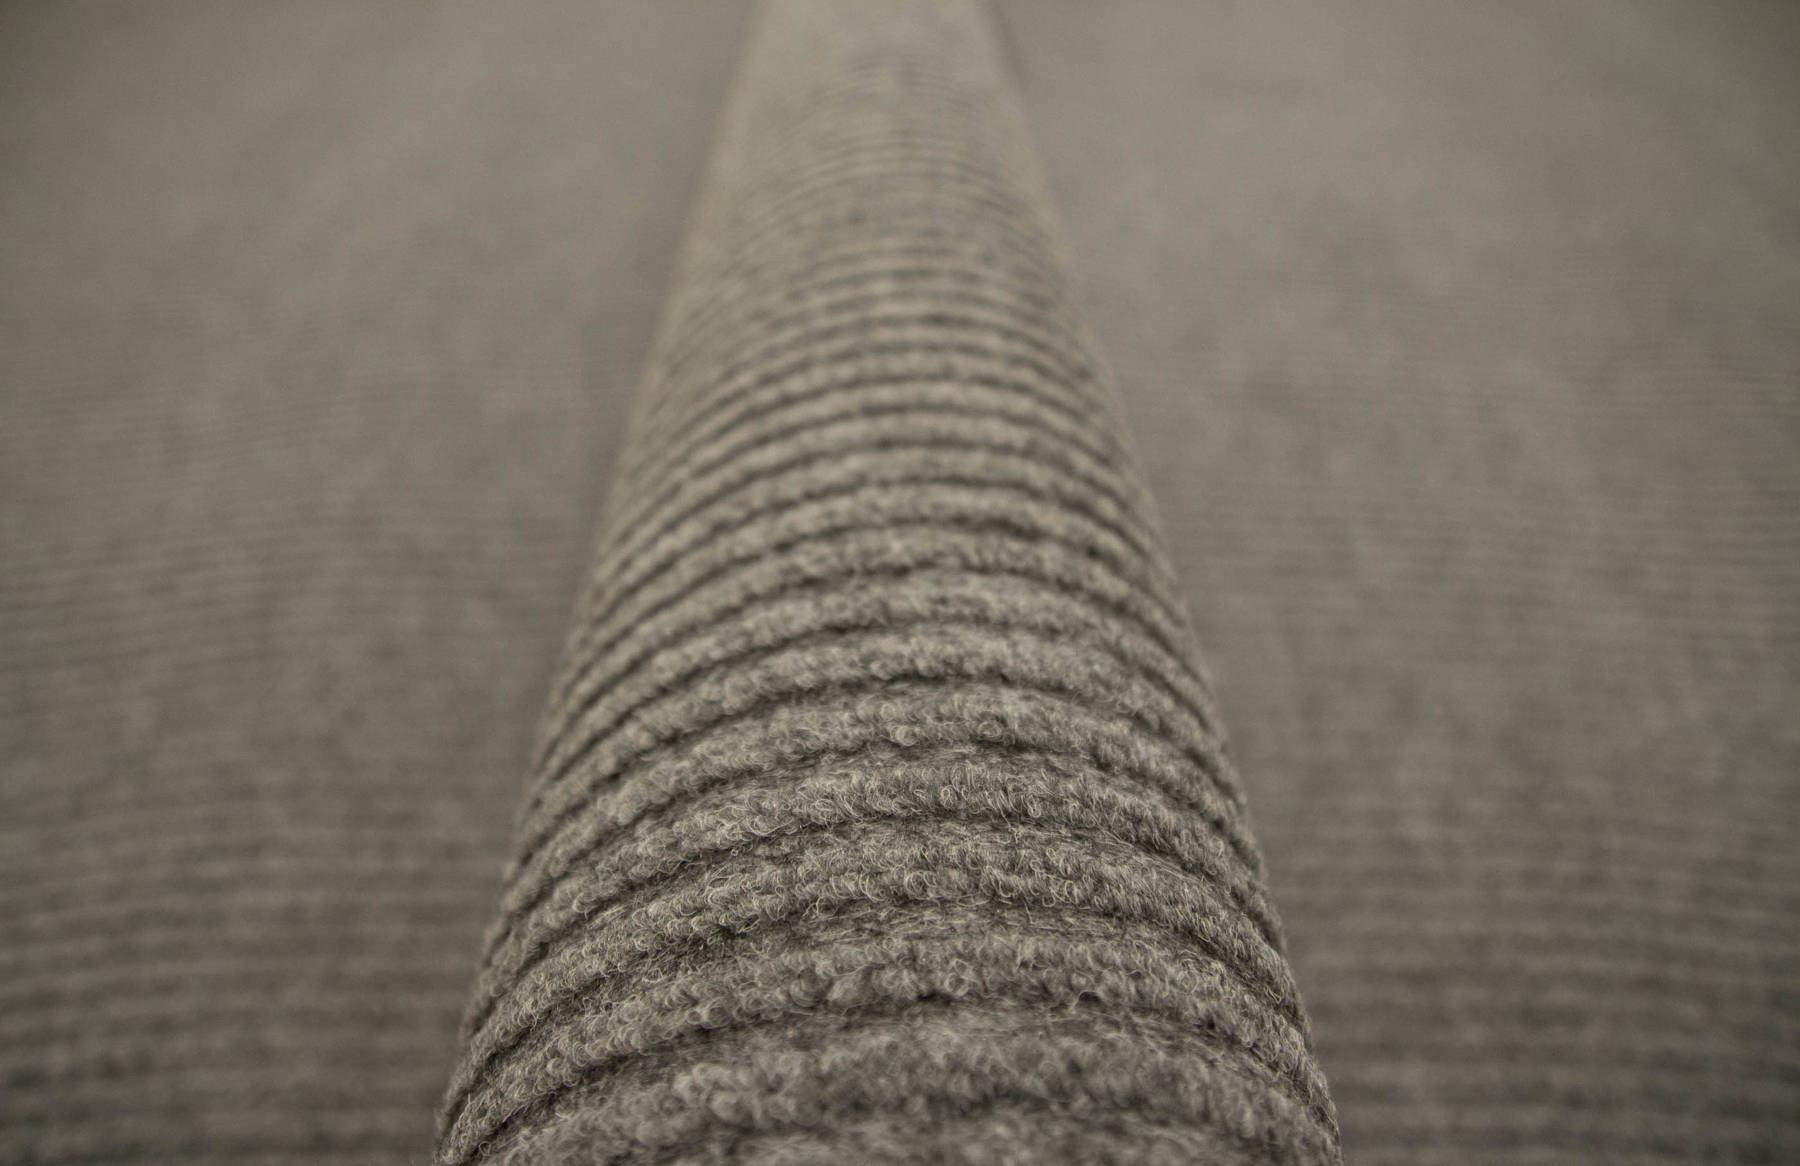 Metrážny koberec Duo 73 sivý 